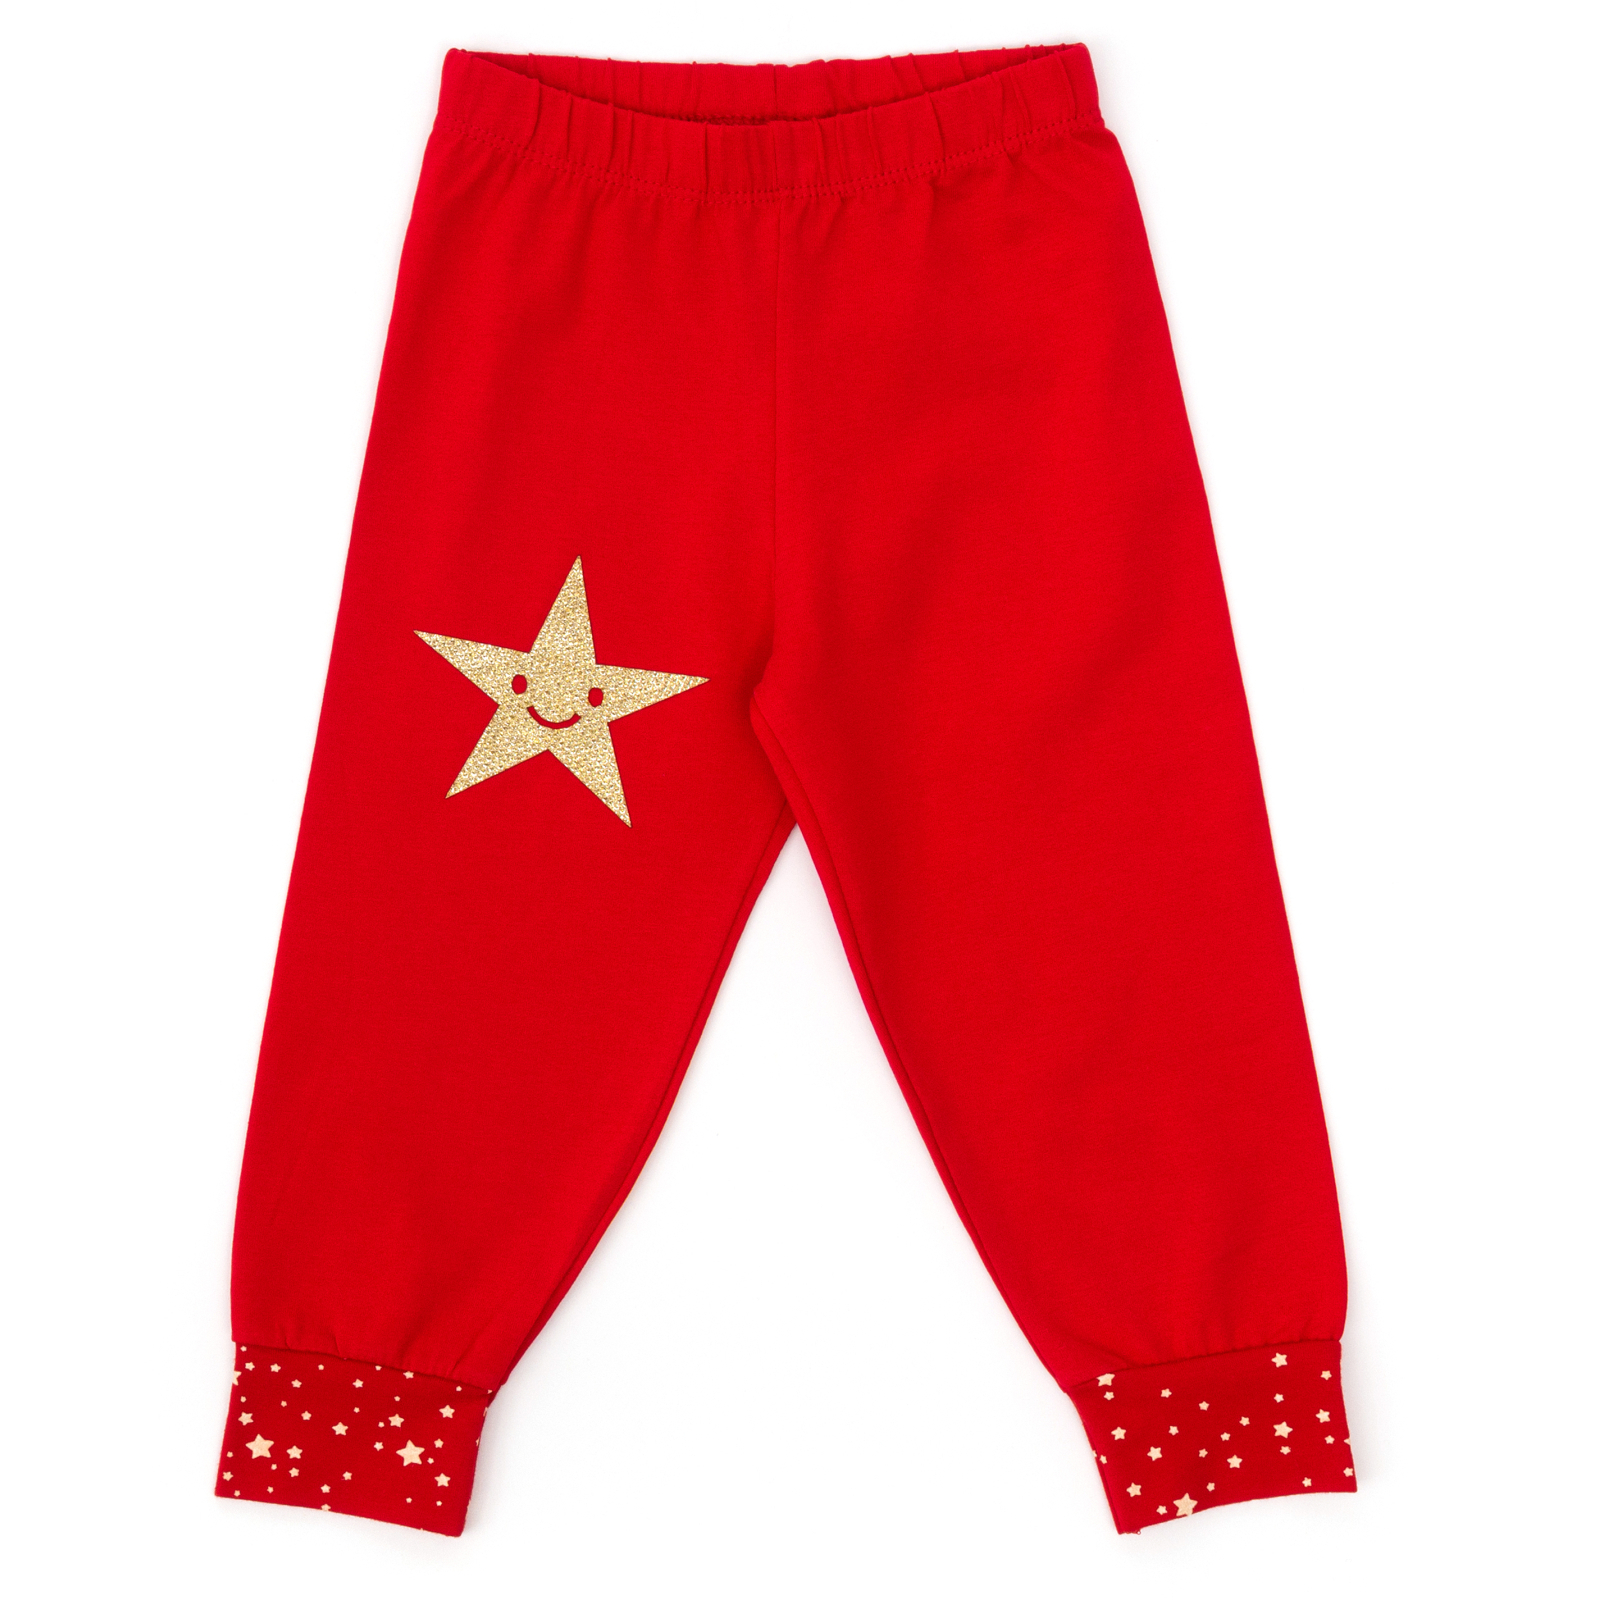 Пижама Matilda со звездочкой (8981-2-98G-red) изображение 4